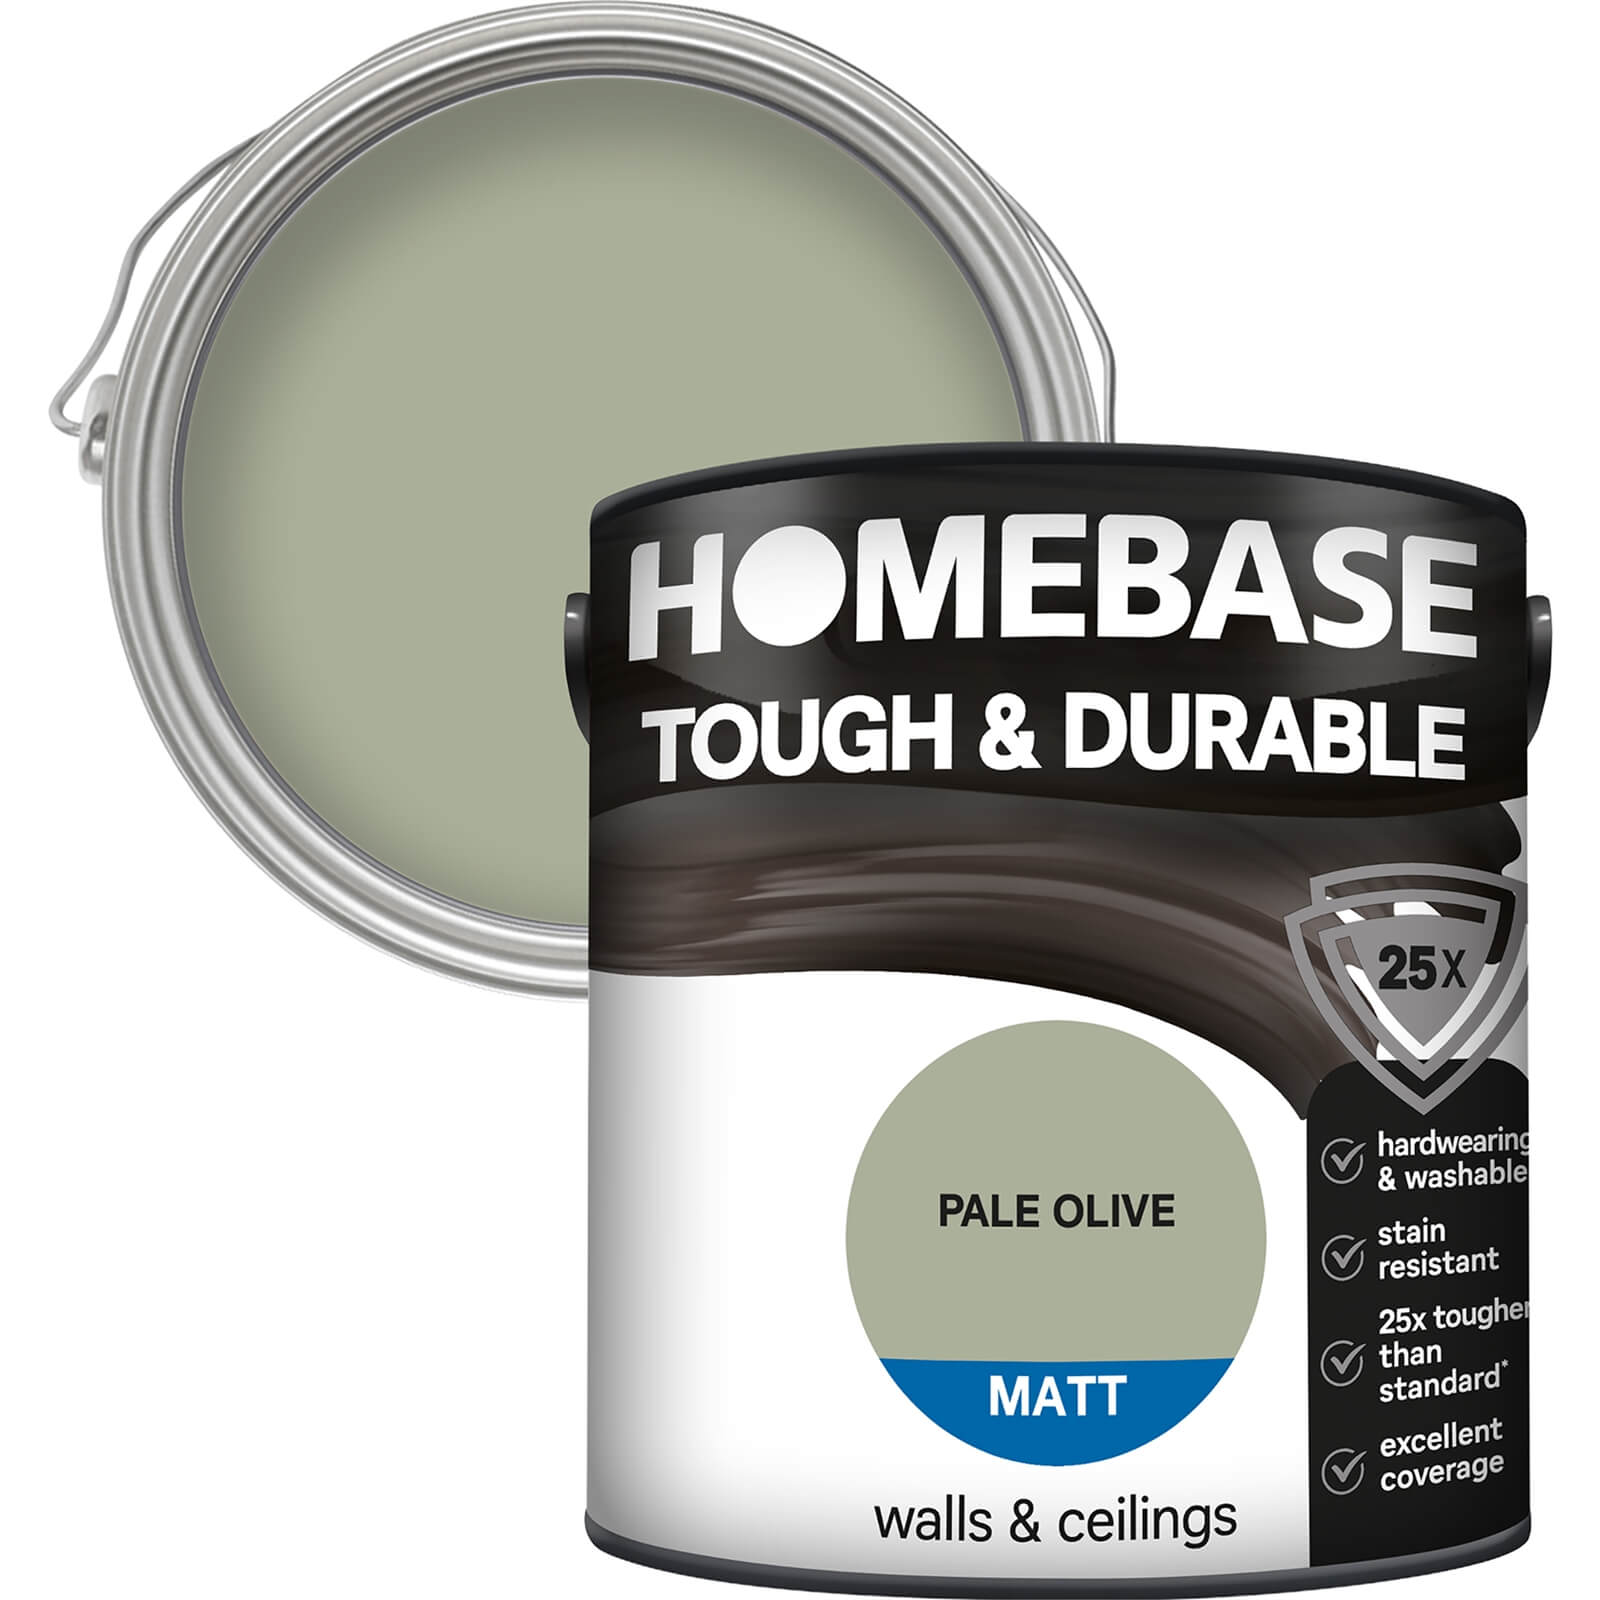 Homebase Tough & Durable Matt Paint Pale Olive - 2.5L